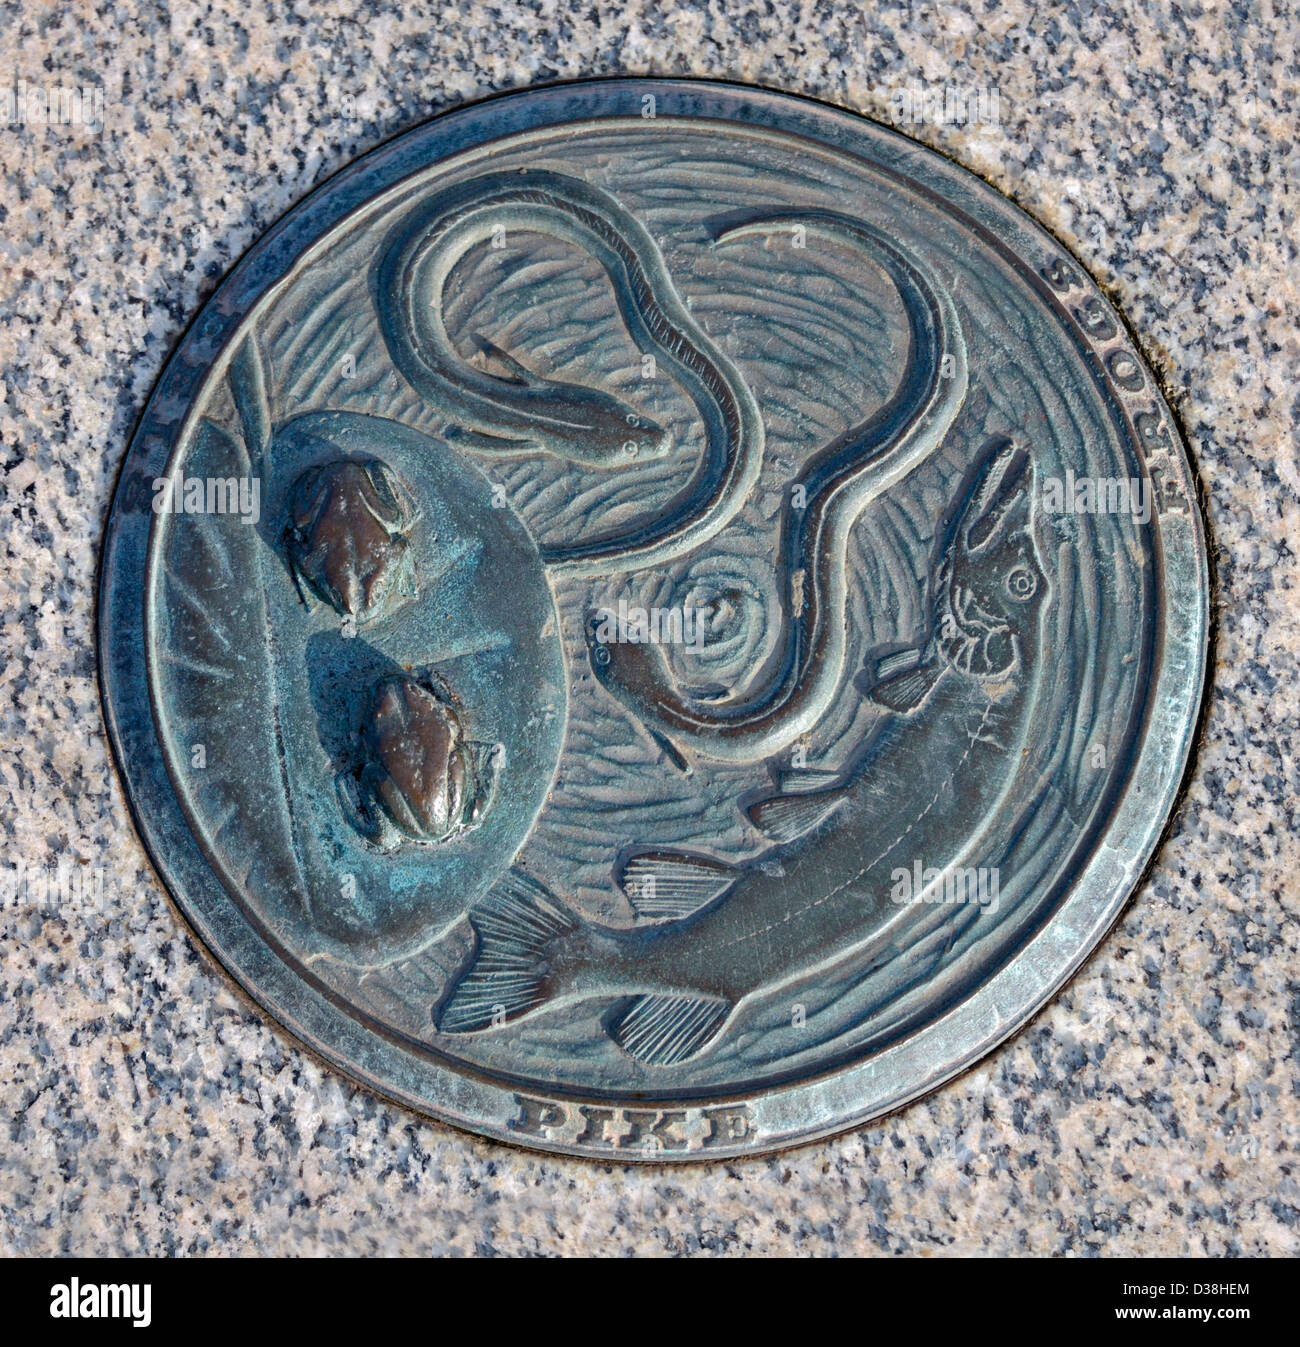 "La chaîne alimentaire", le brochet, les grenouilles, les anguilles. Sculptures en plein air. La pierre jetée, Morecambe, Lancashire, Angleterre, Royaume-Uni, Europe Banque D'Images